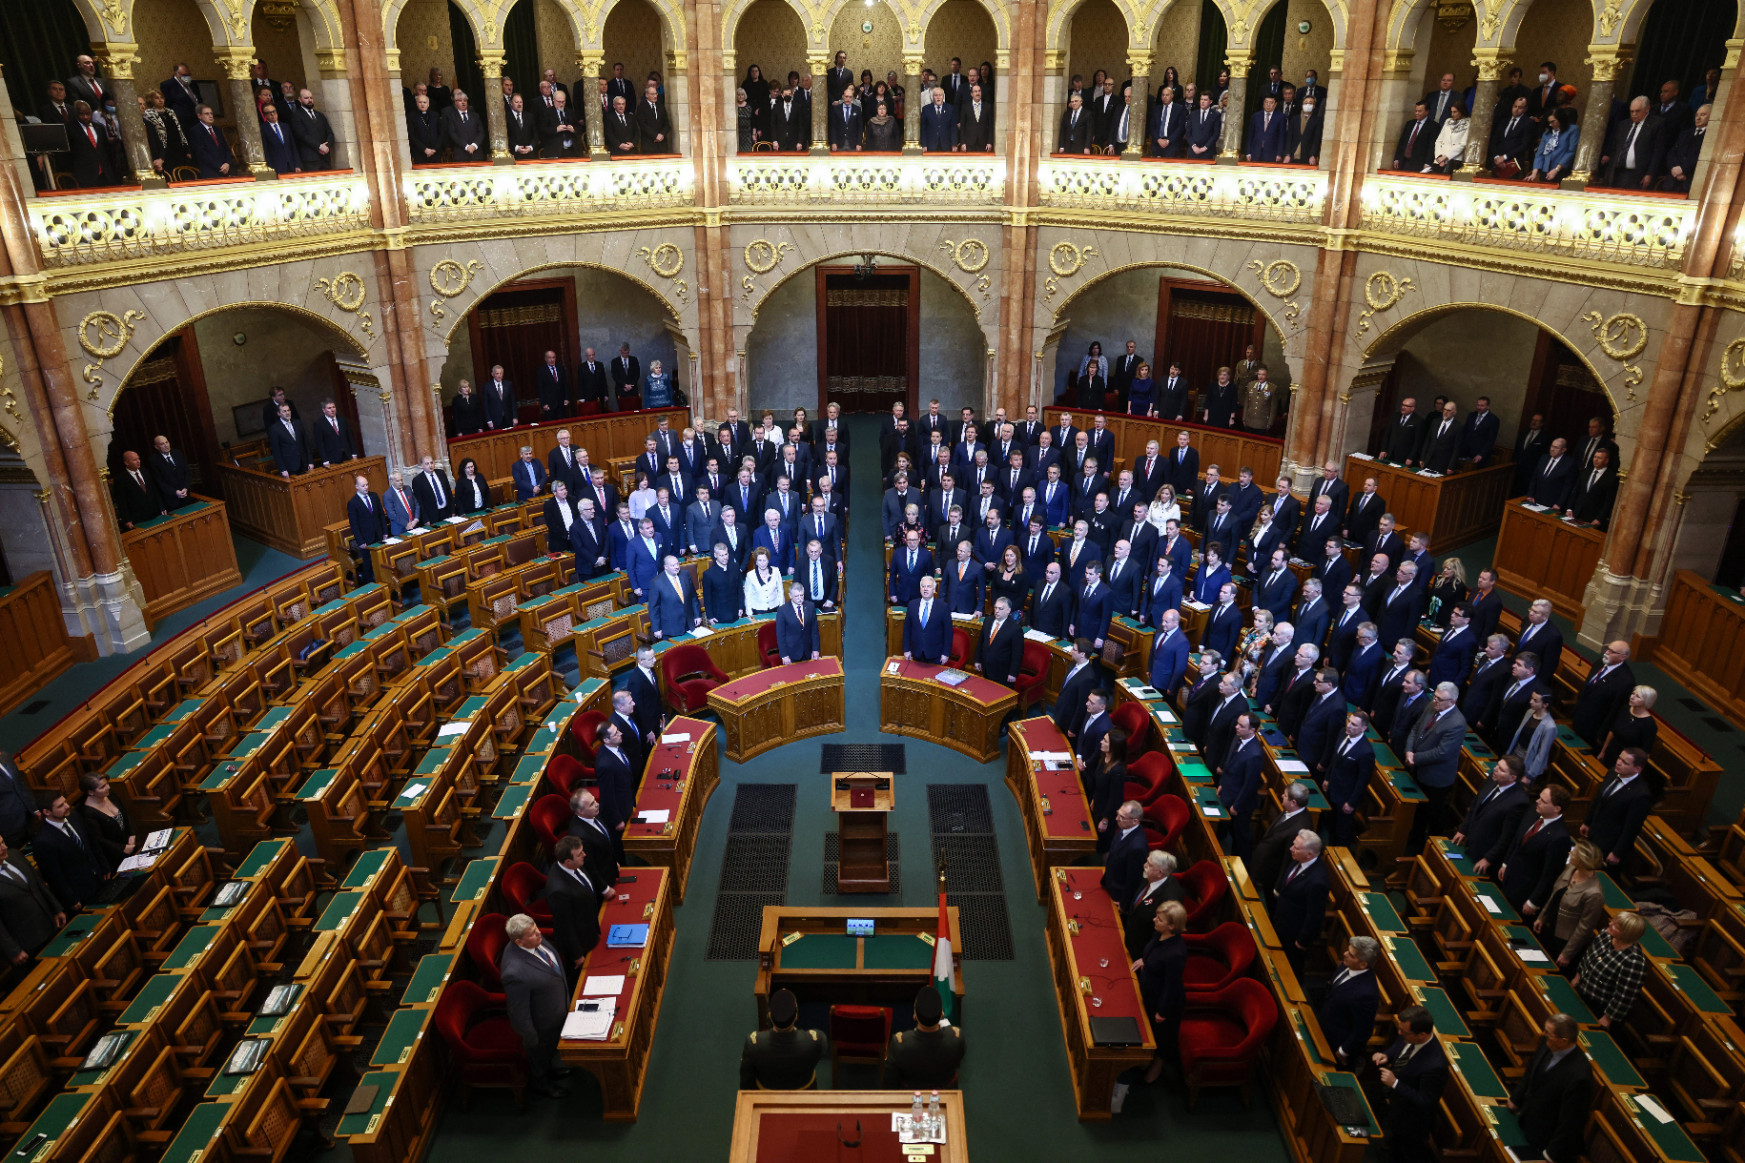 Átveszik a mandátumot az ellenzéki képviselők, de még nem tudják, mit csinálnak a parlamentben